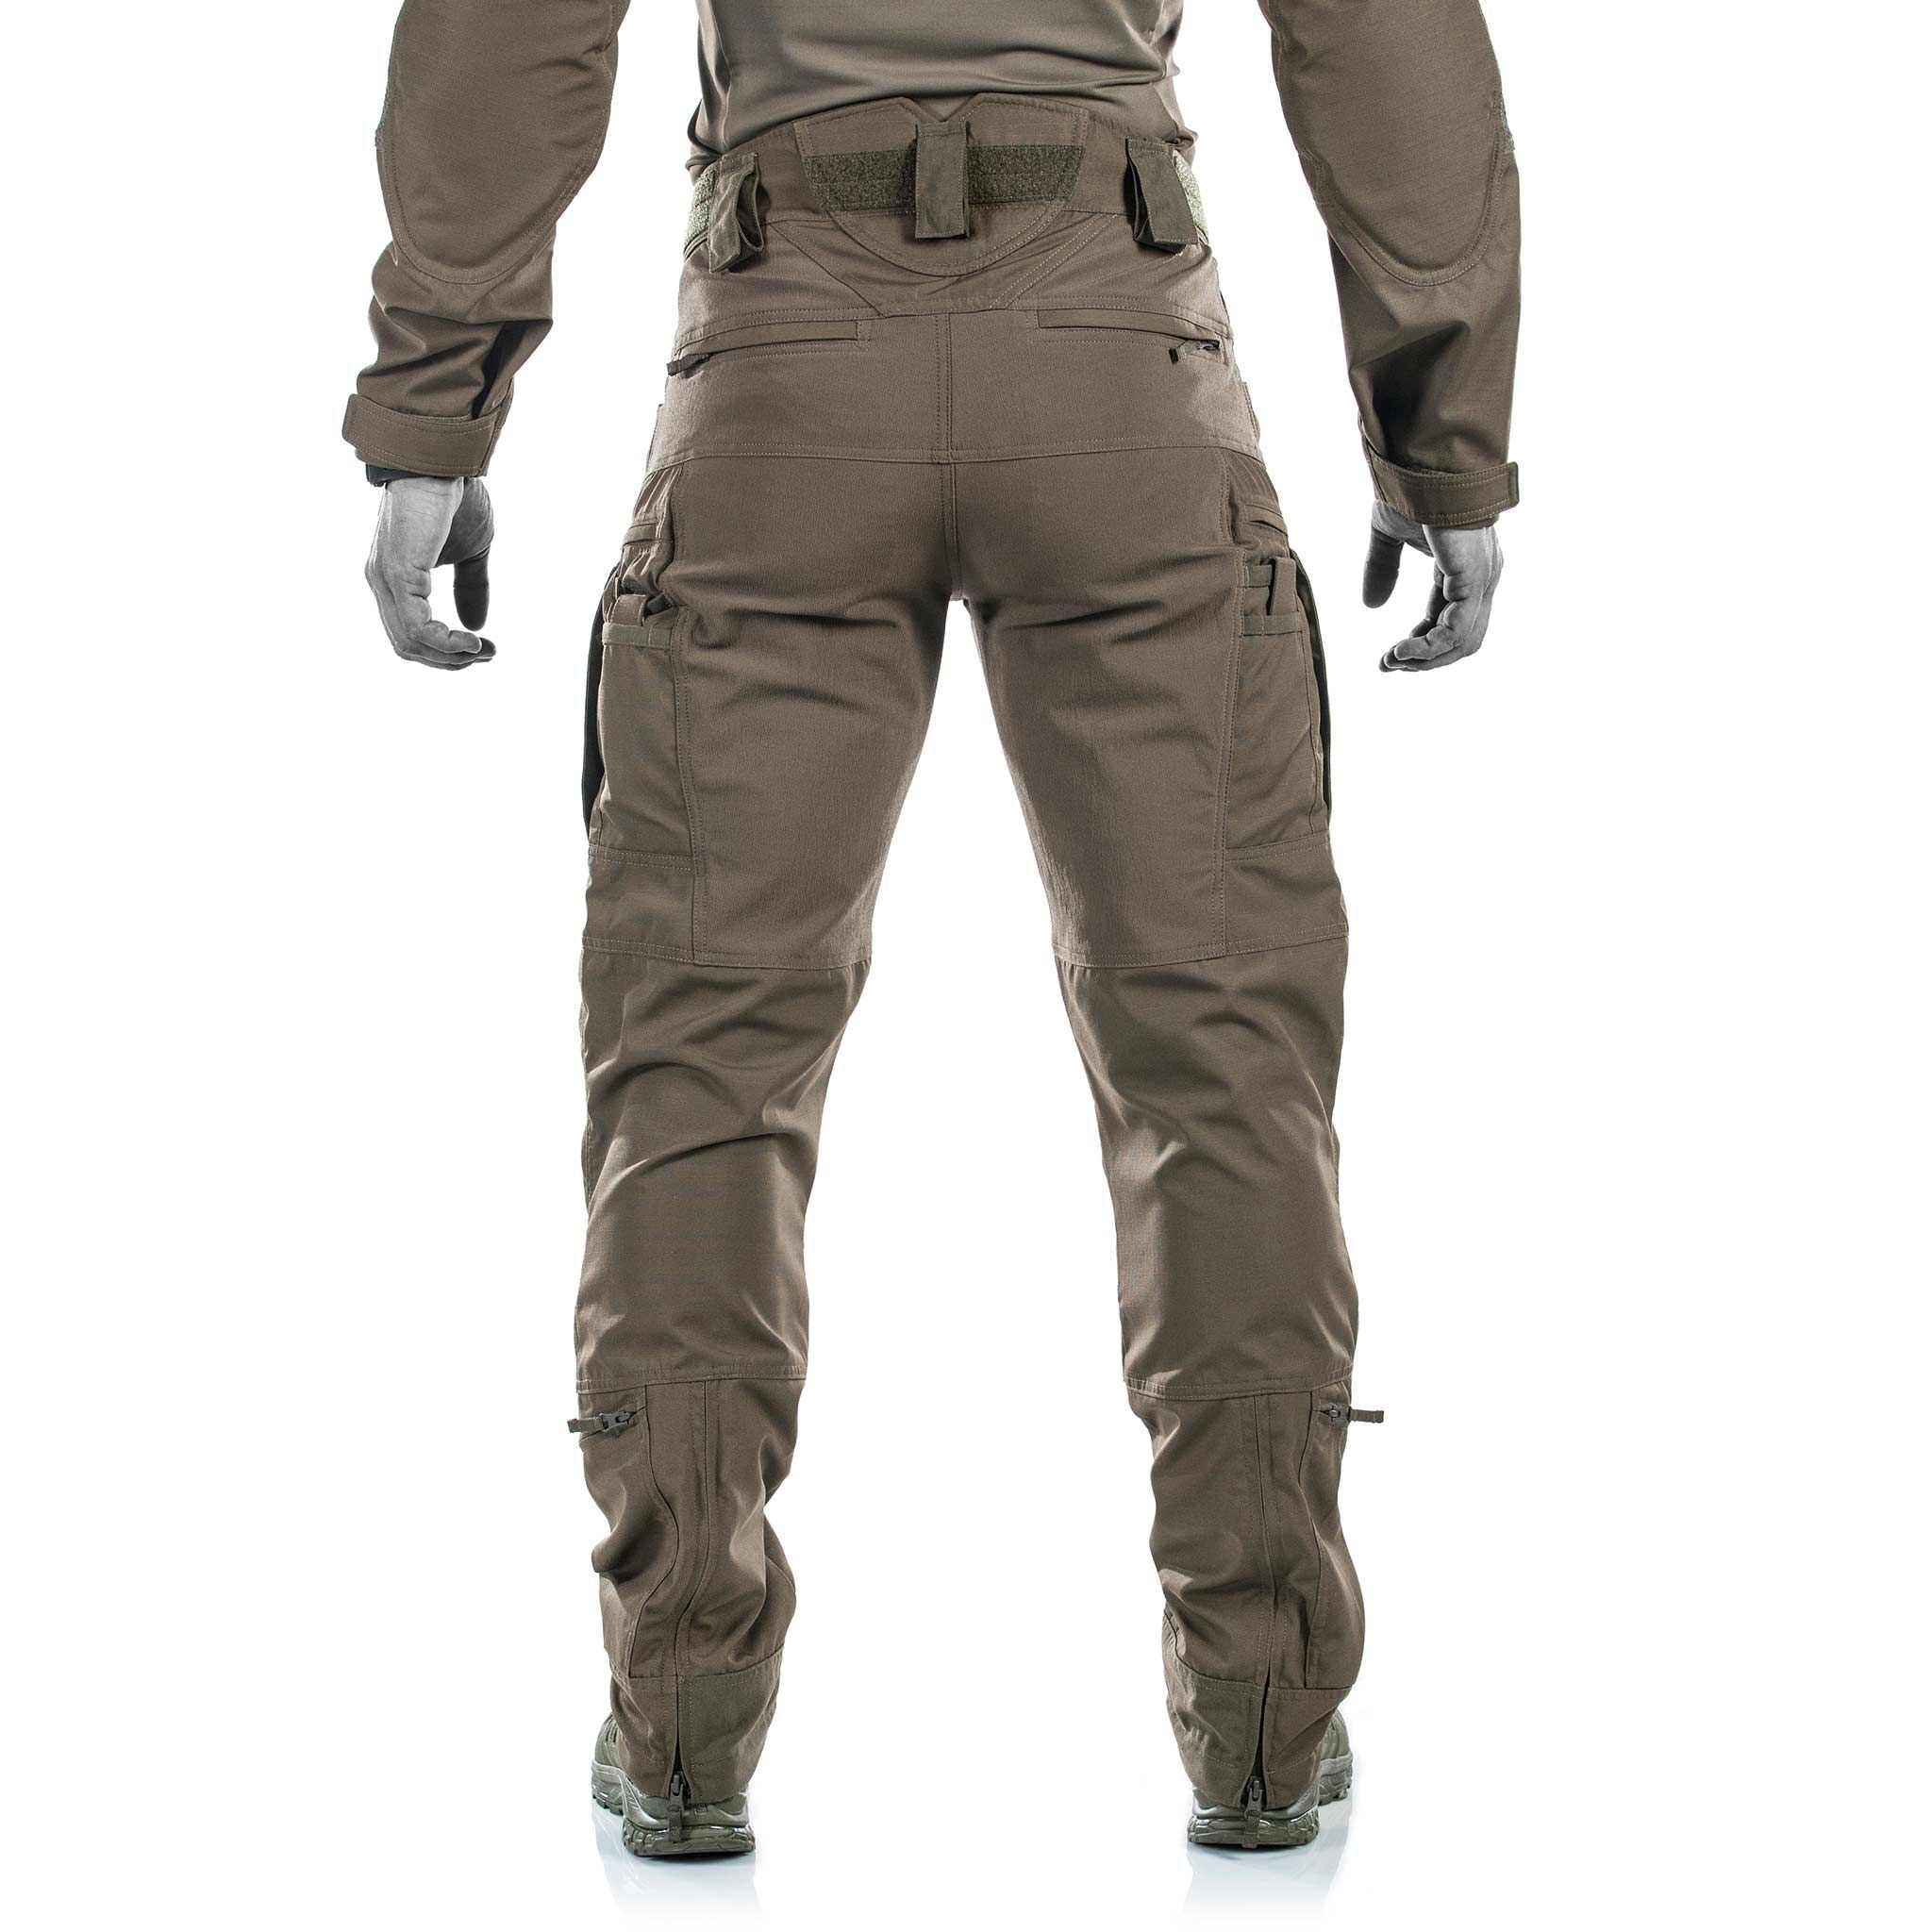 UF PRO - Striker XT Gen. 3 Combat Pants - Brown Grey